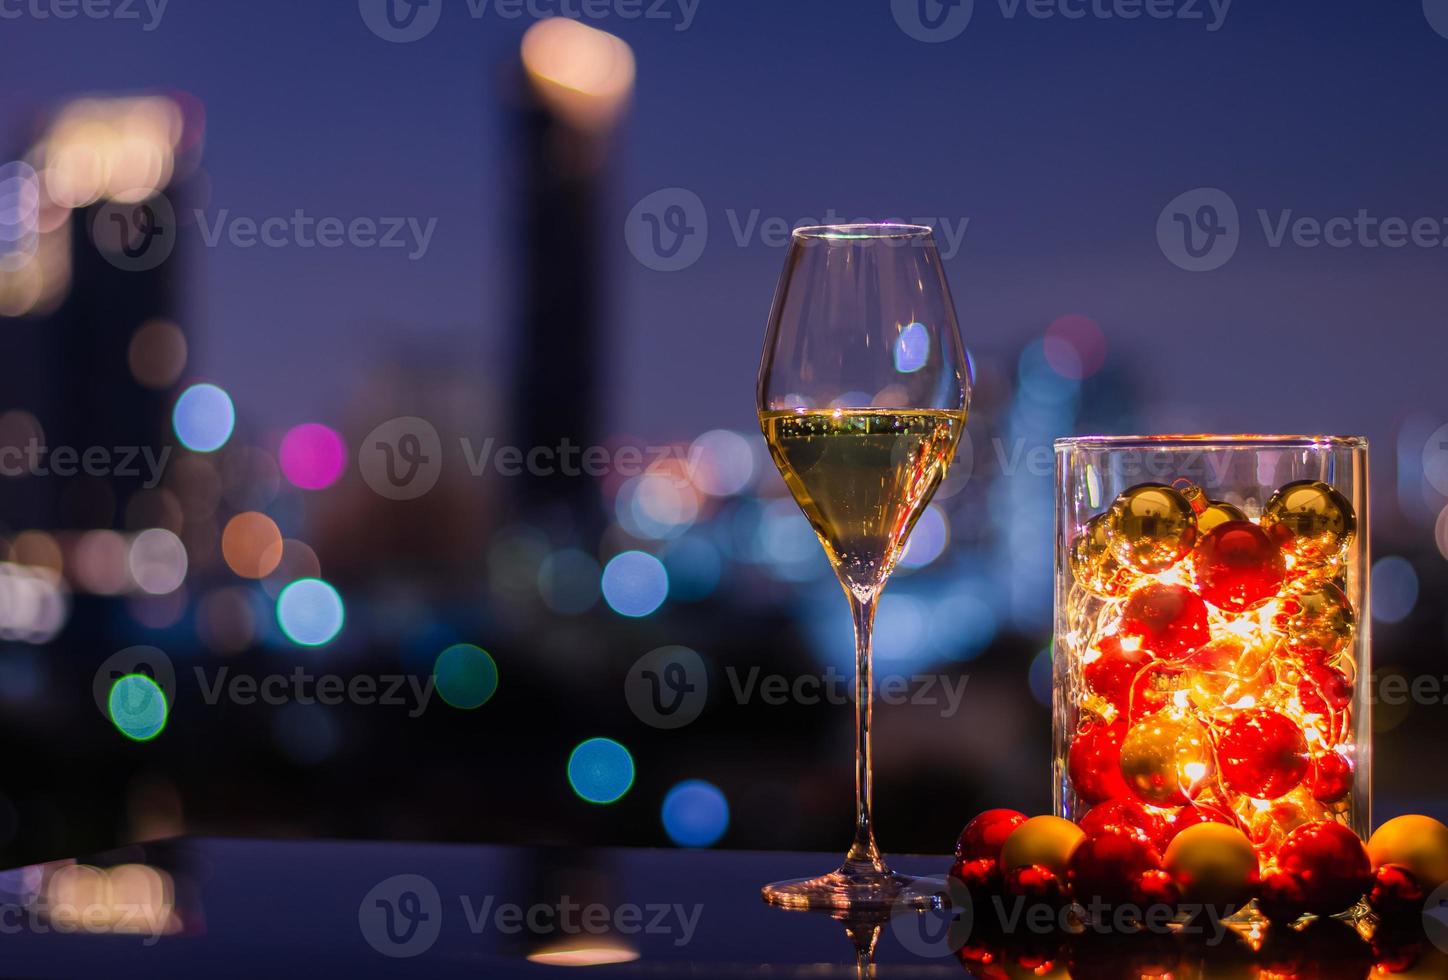 enda glas av vit vin den där ha jul ornament med lampor i glas vas på färgrik stad bokeh ljus bakgrund. foto